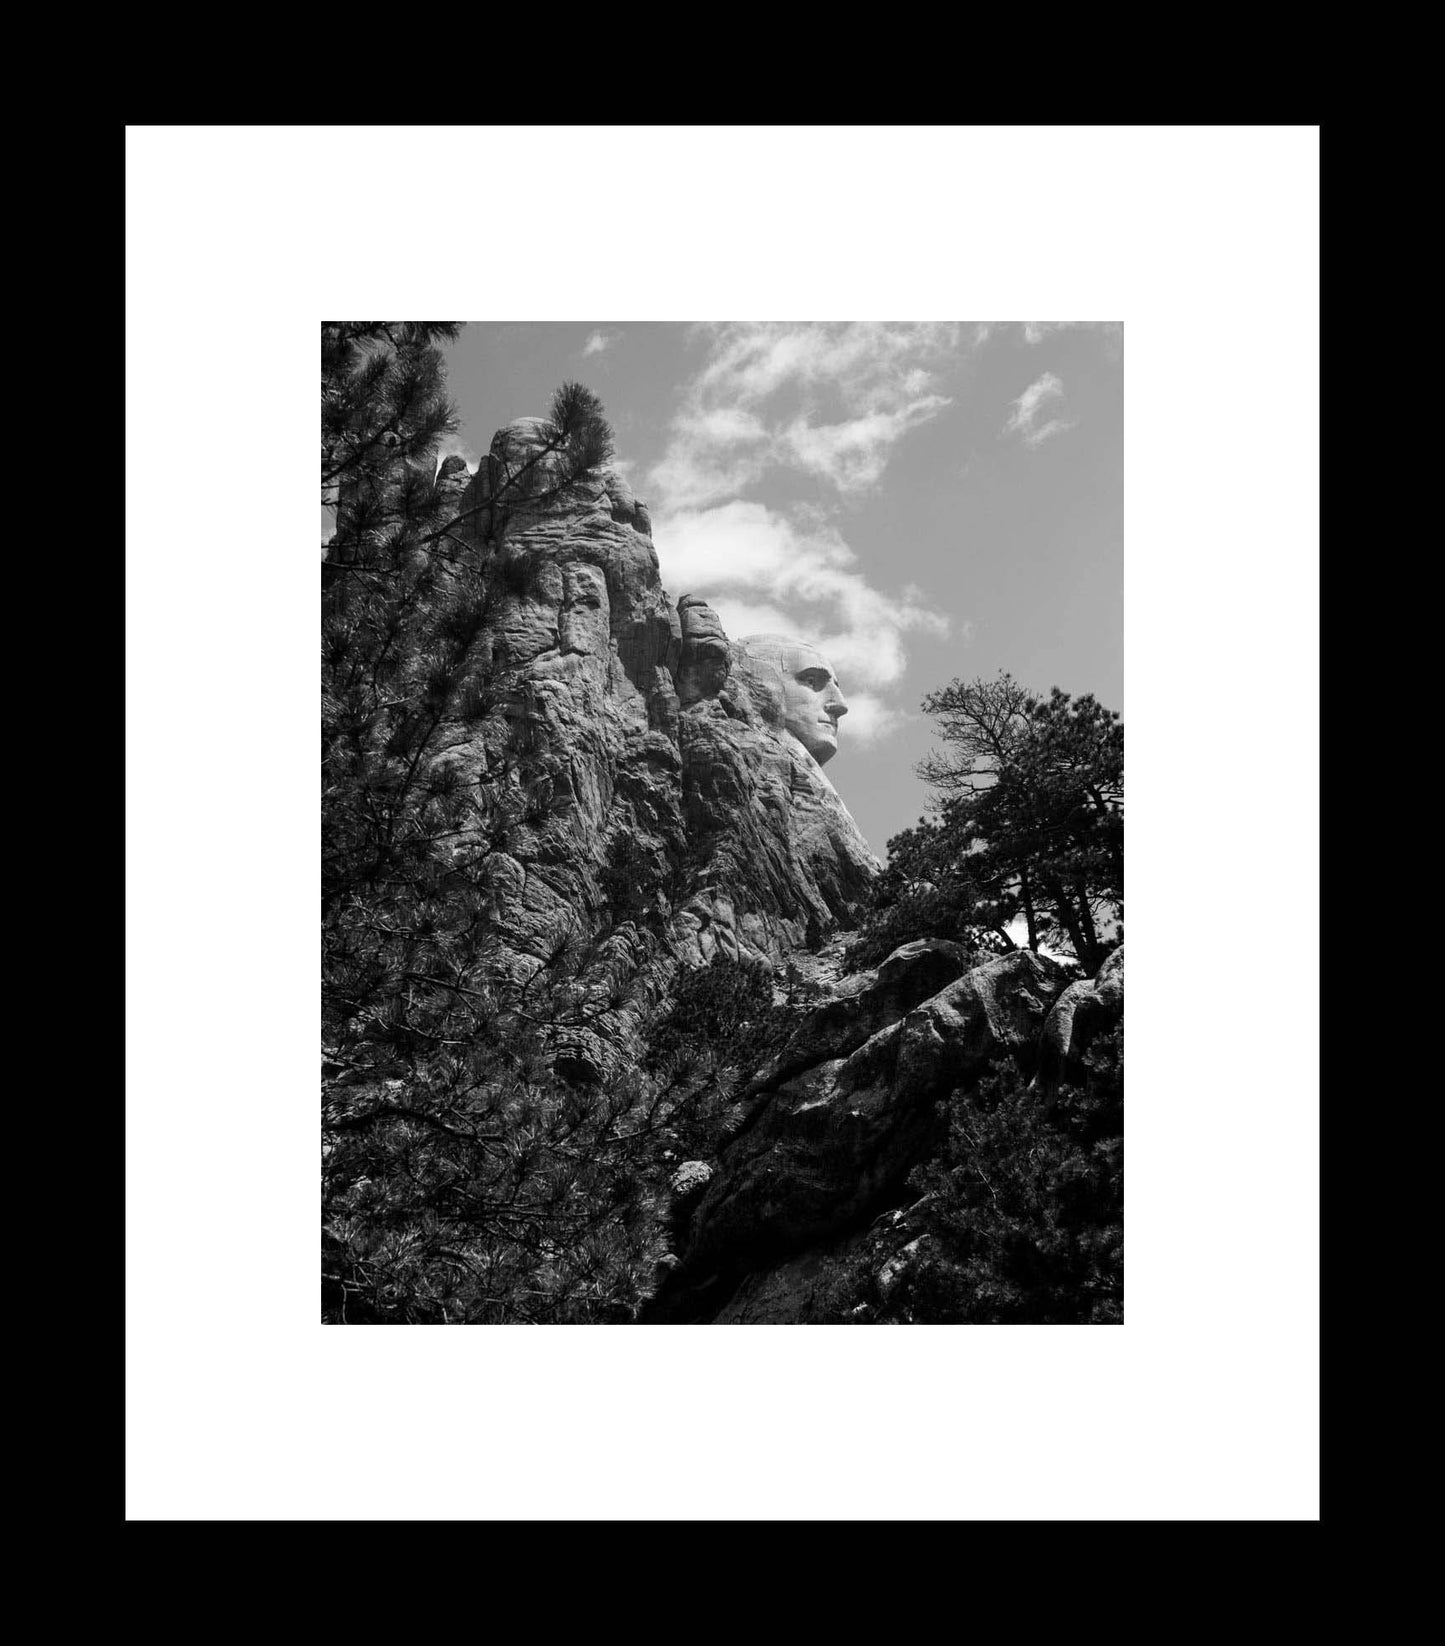 Black and White Mount Rushmore Photography Print, George Washington's Profile, Keystone, South Dakota Travel Presidential Souvenir - eireanneilis